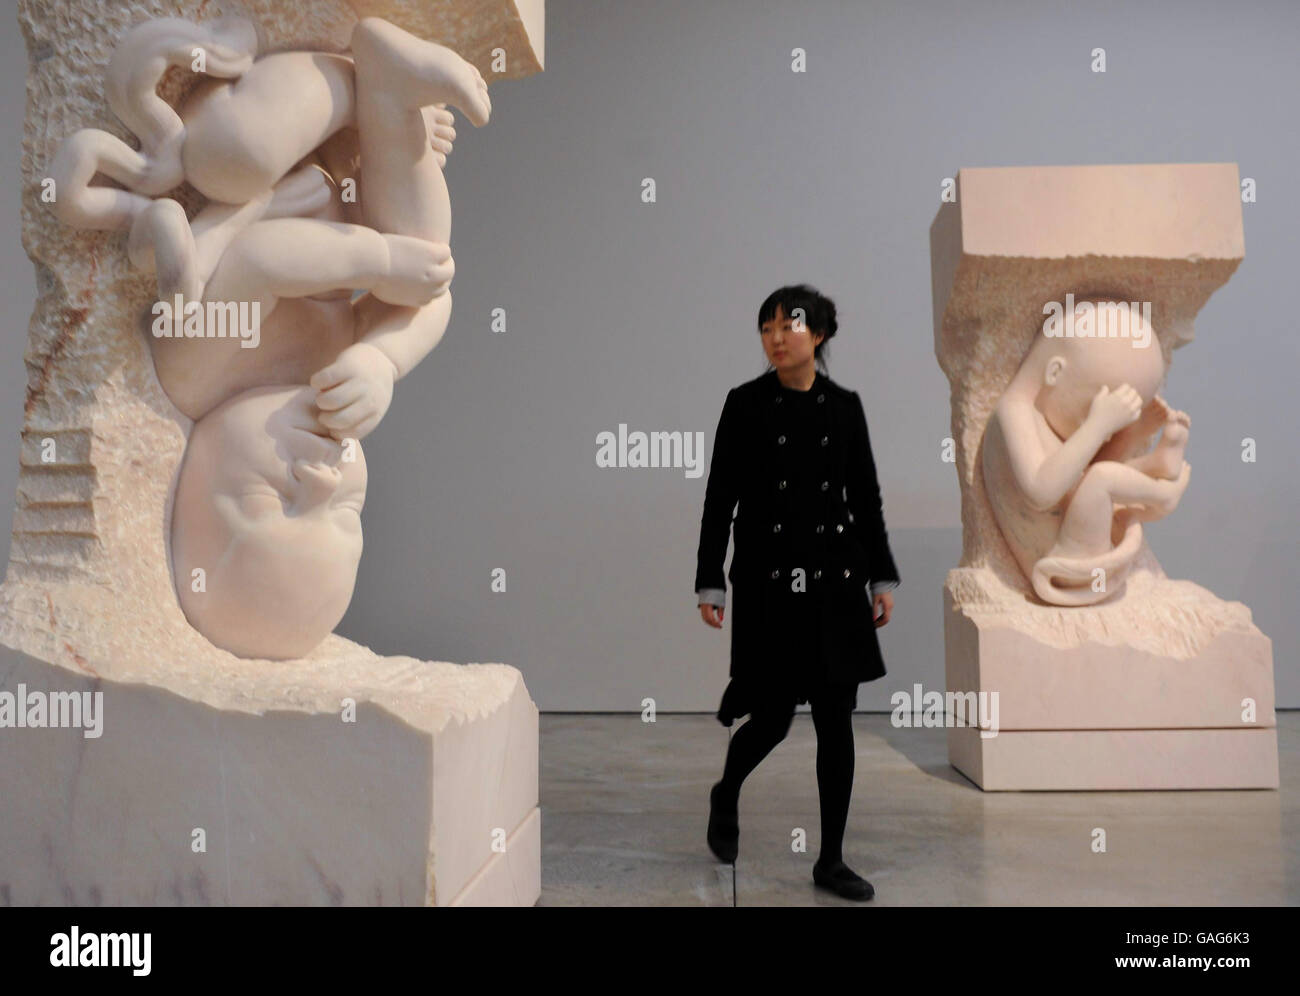 Zwei Skulpturen in einer Sequenz von neun vom Bildhauer Mark Quinn, die gemeinsam den Titel Evolution tragen und die monatliche Entwicklungsstadien eines Kindes im Mutterleib darstellen, werden in der White Cube Gallery in London gezeigt. Stockfoto